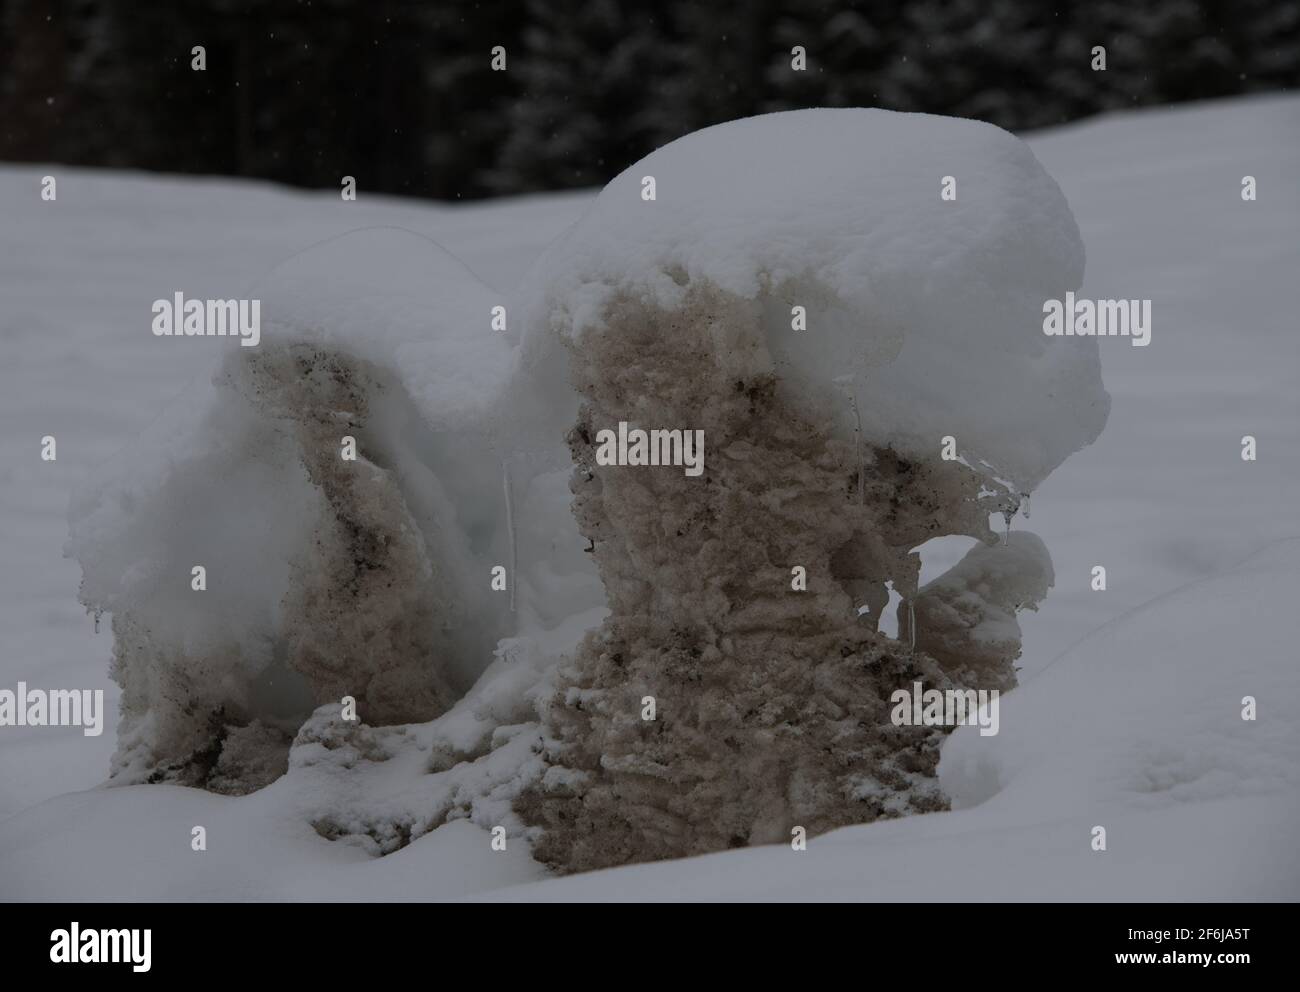 neve mound di sporco vecchia neve ghiacciata con una spolverata di neve fresca fresca bianca sulla parte superiore forme astratte formato orizzontale con spazio per il tipo Foto Stock